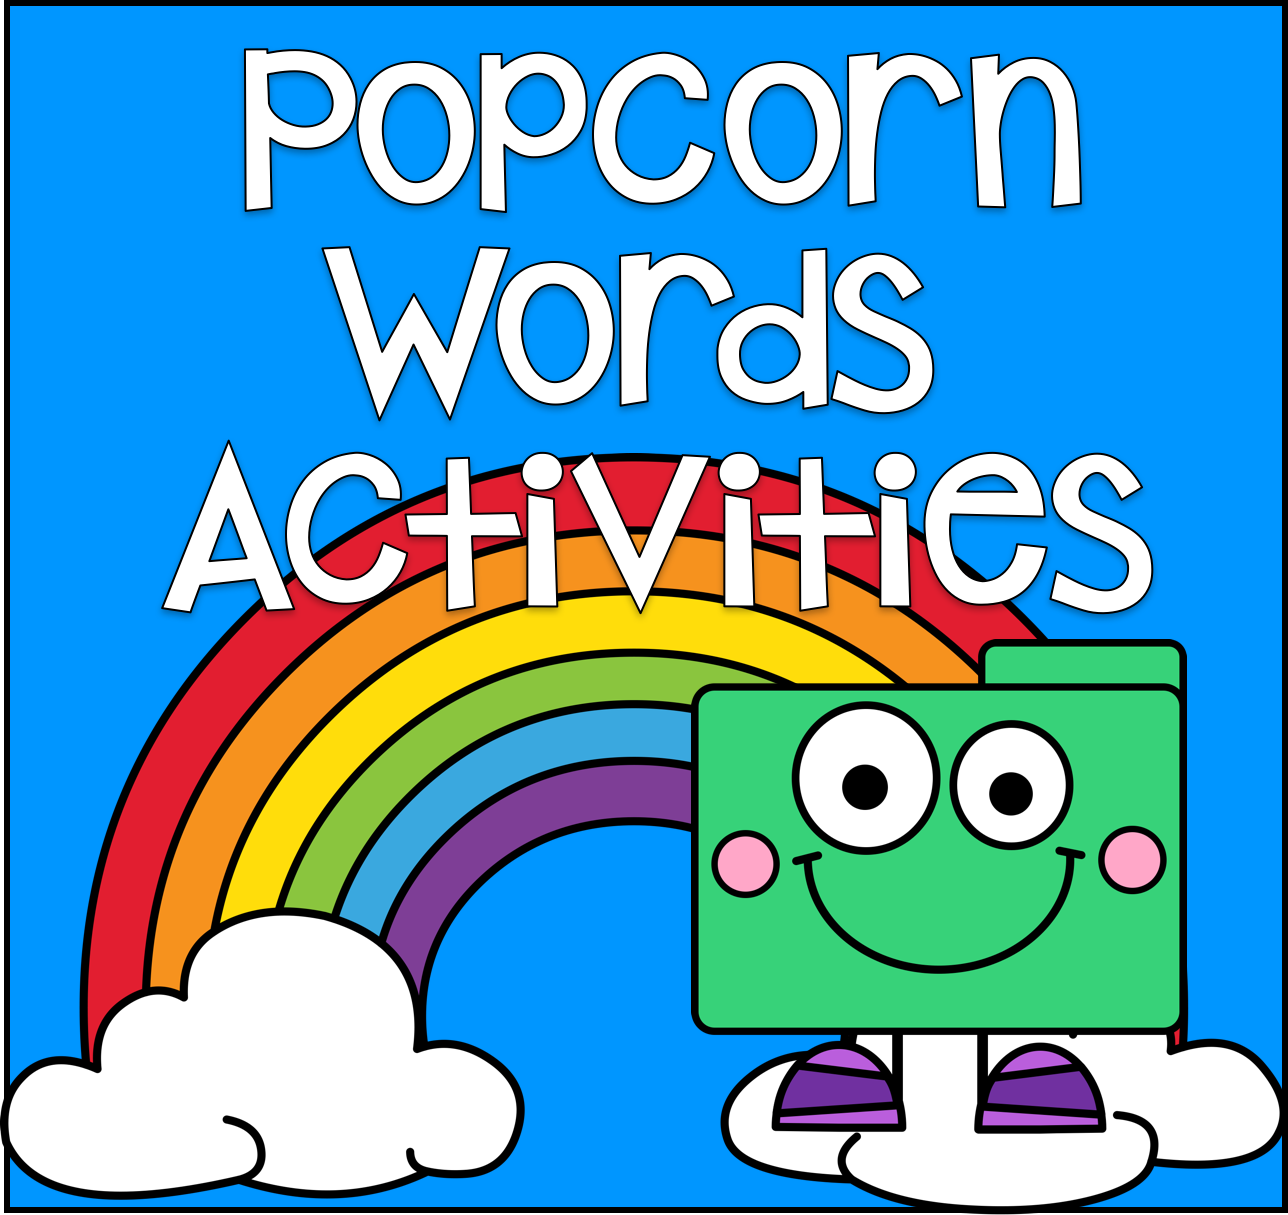 Popcorn Words Activities